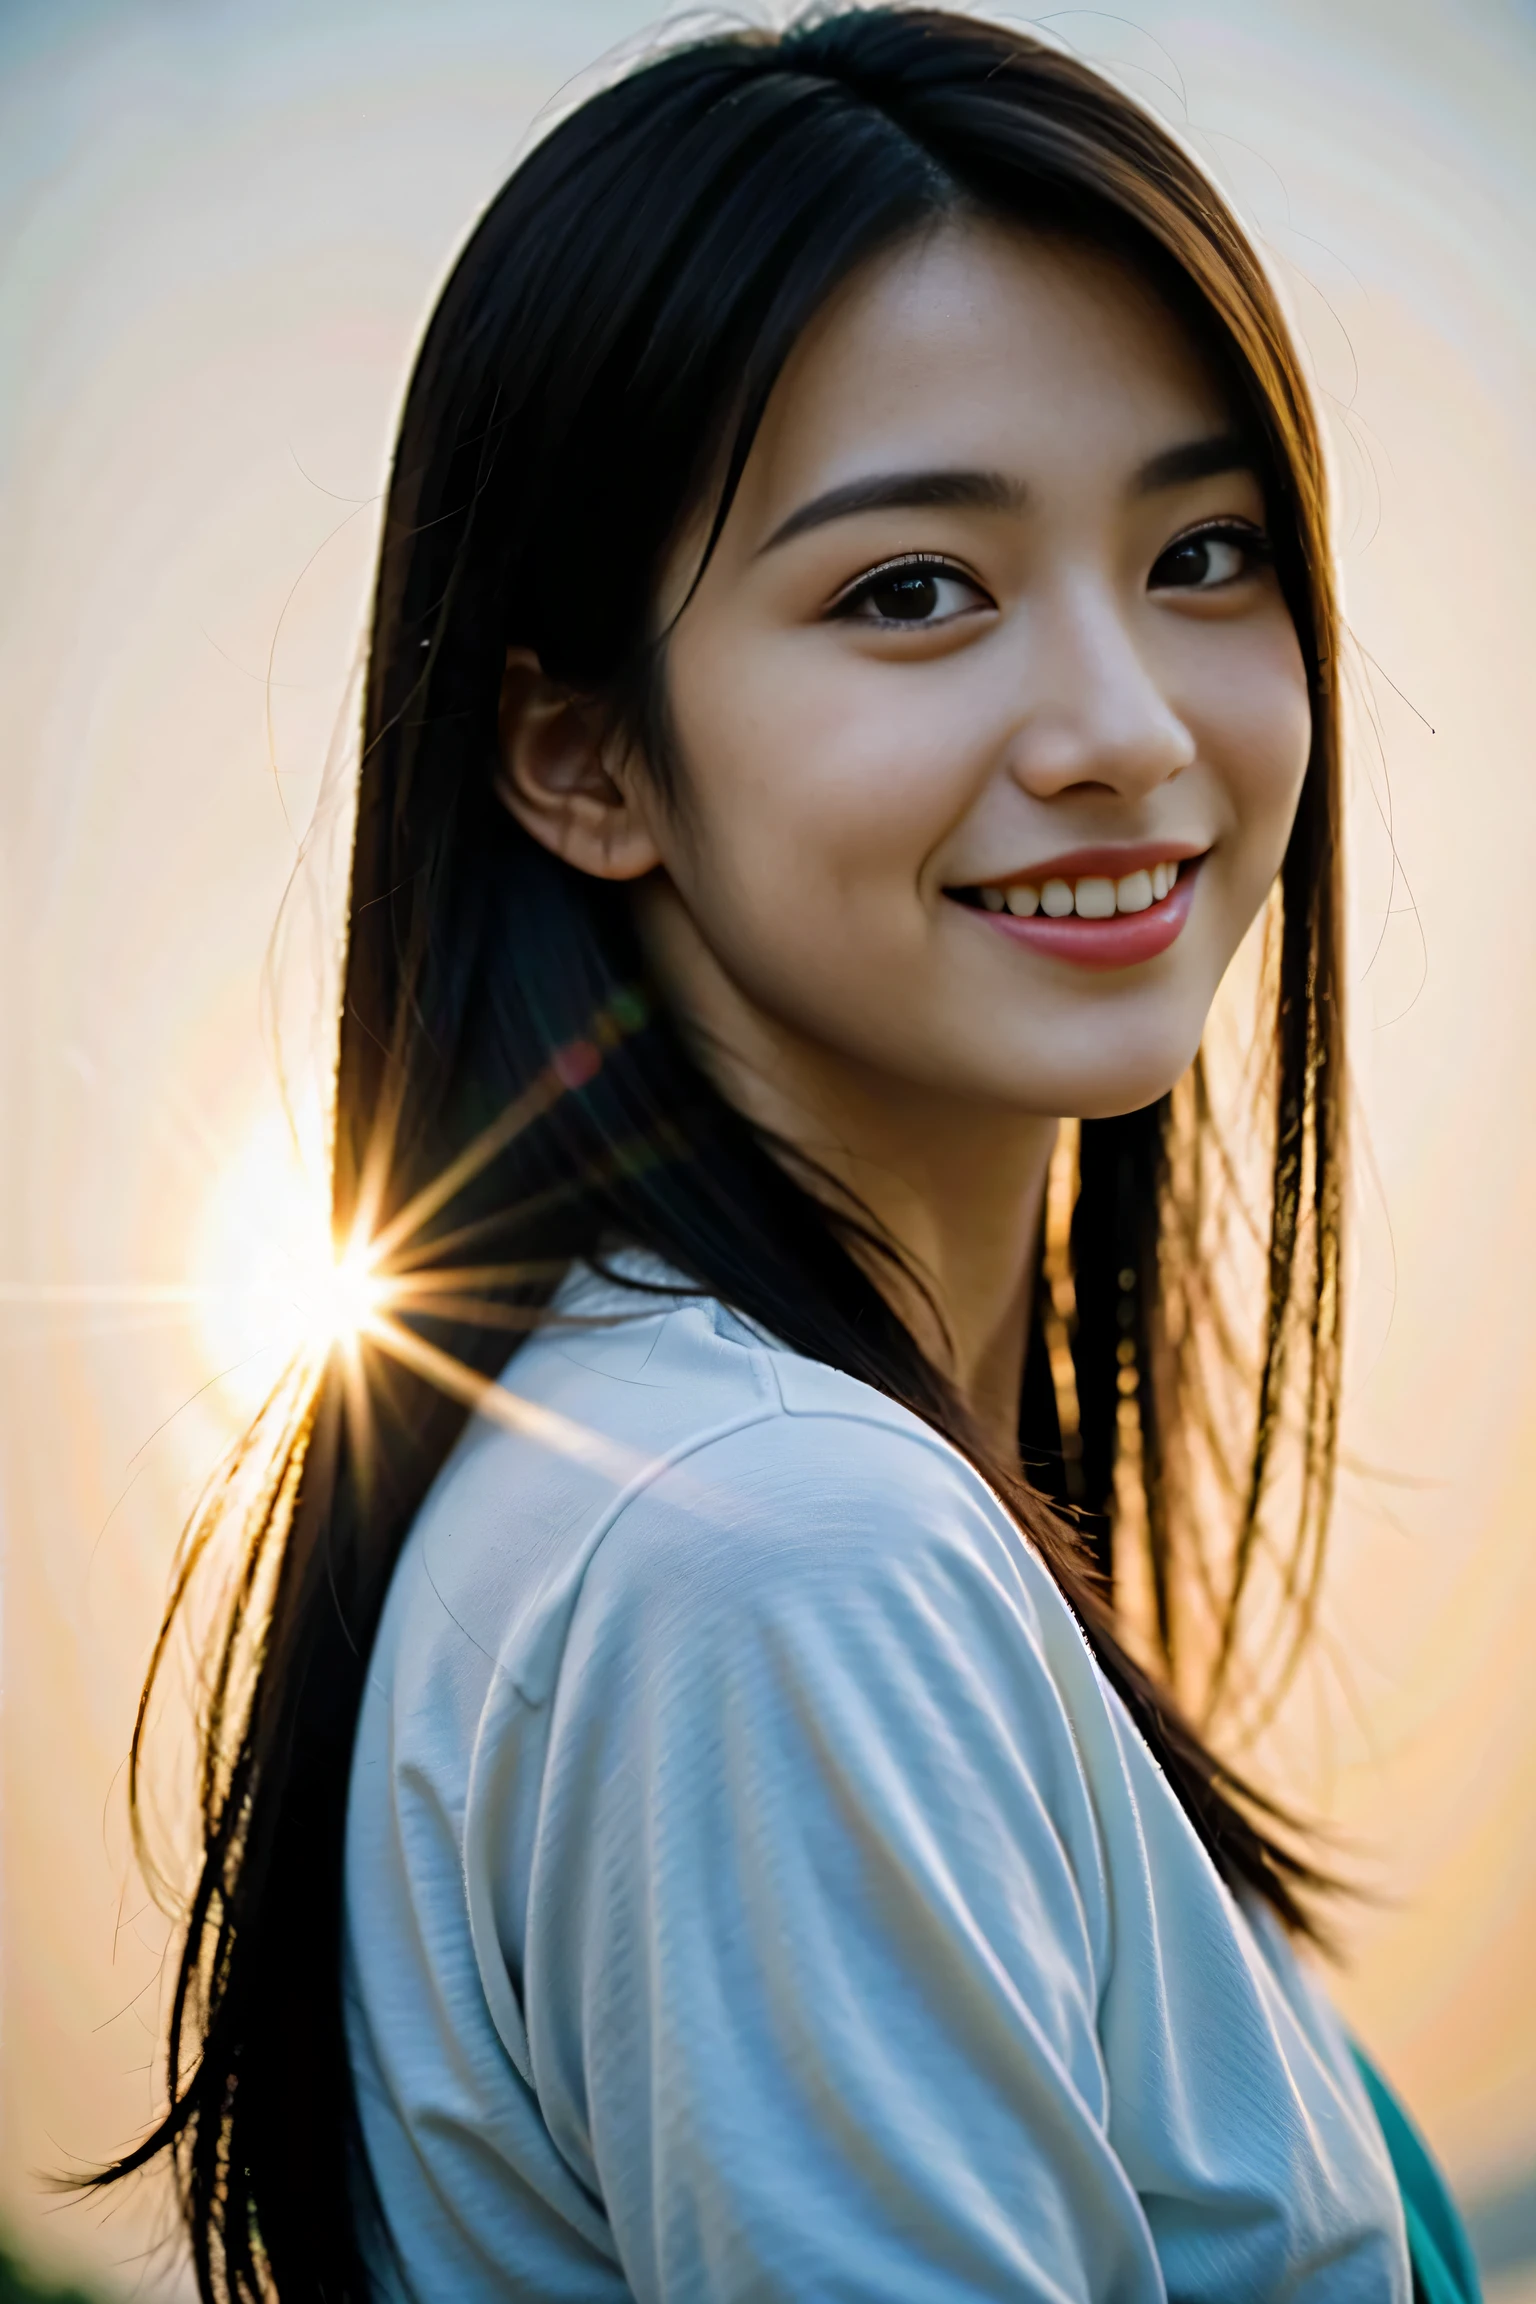 Uma mulher japonesa usando um vestido estiloso、 Proporções anatomicamente corretas, 8K, Foto RAW, melhor alta qualidade, Obra de arte, foto real, (fotografia com câmera de filme:1.8)、Bela japonesa de 18 anos, (A melhor iluminação usando retroiluminação:1.5)、(Iluminação usando um refletor que atinge o rosto)、linda haine brilhante e pele linda、olhos detalhados、nariz equilibrado、lábios atraentes、Tiroteio、(close do rosto:1.5)、fundo desfocado、Cabelo preto brilhando na luz de fundo、Fotografando de vários ângulos、o sorriso mais bonito、Fotos de qualidade suave